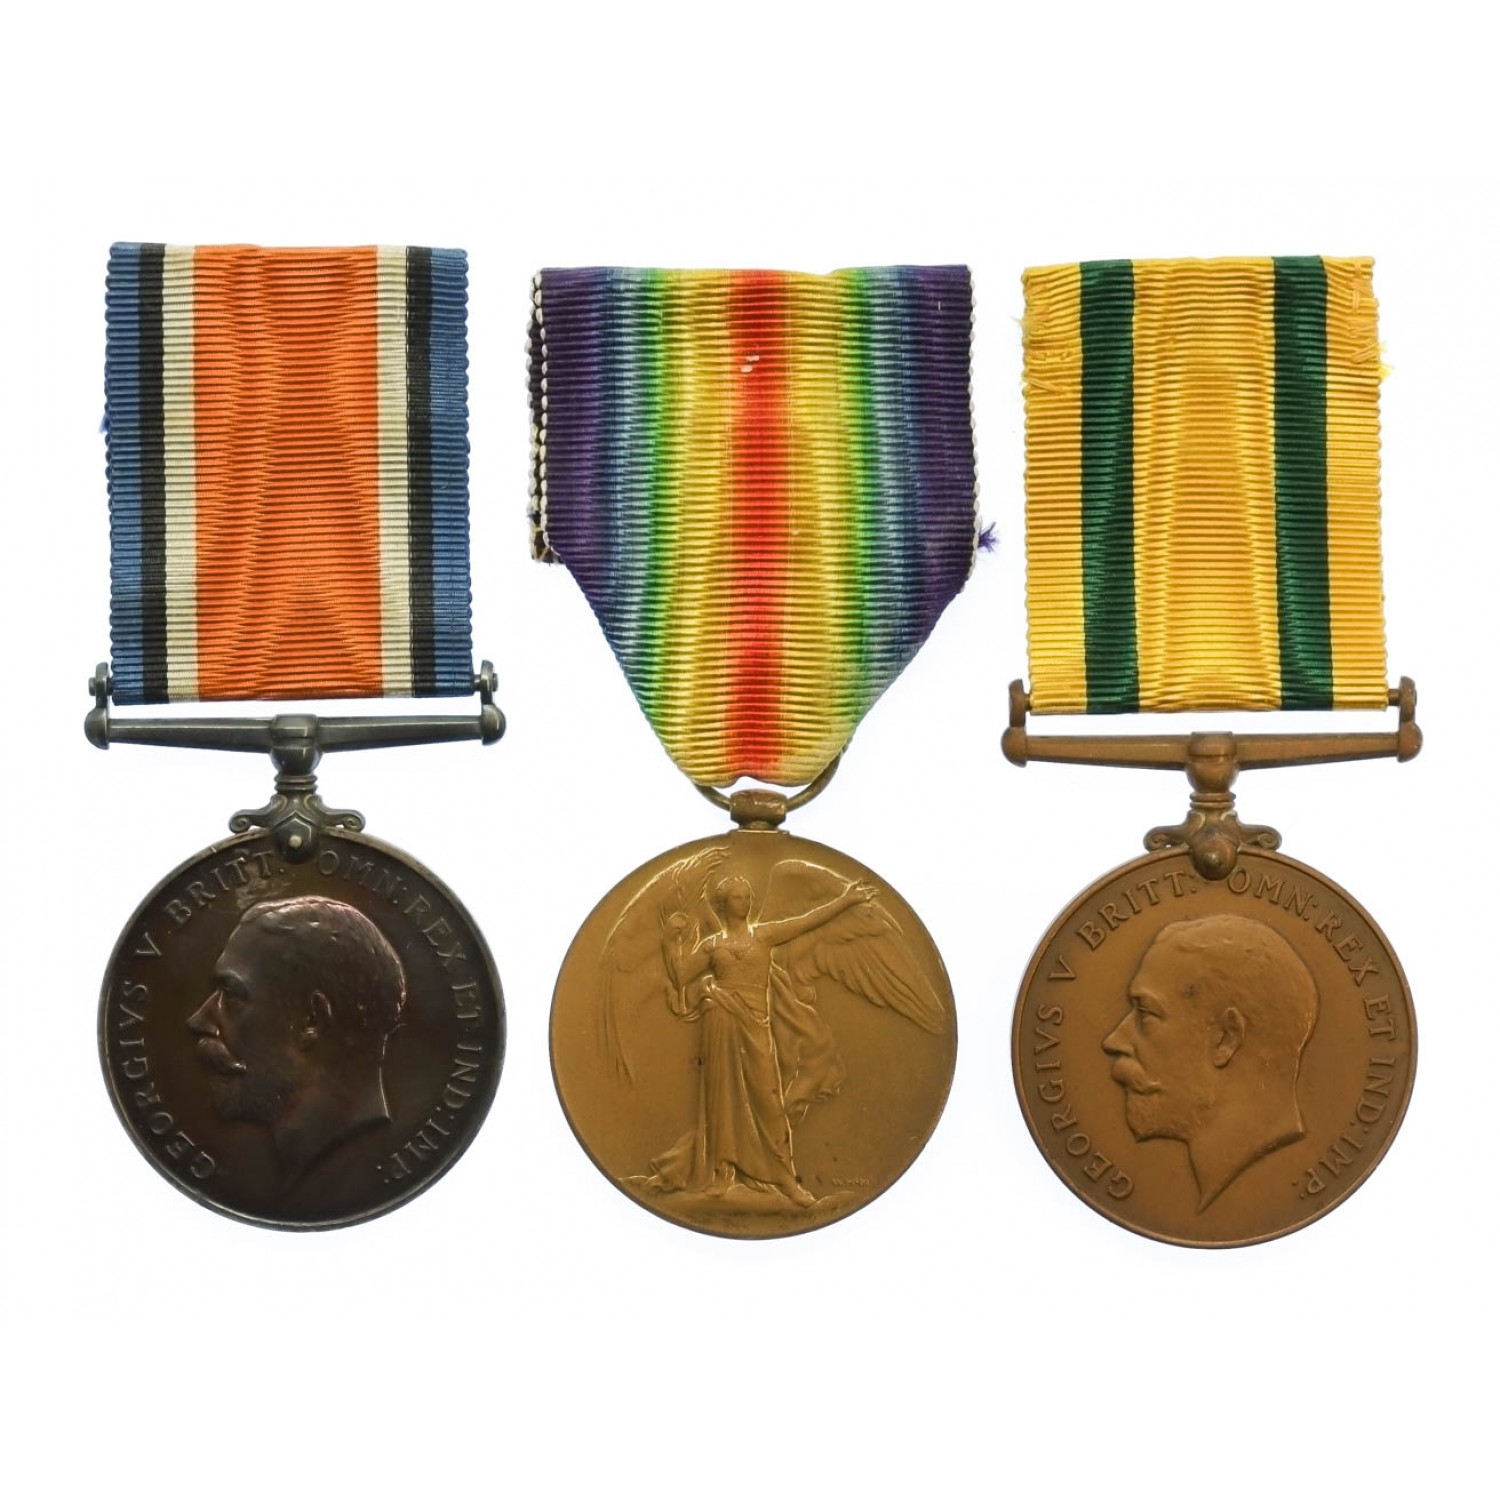 Boussole militaire britannique, modèle MK VII (WWI) - VFMR Orders&Medals